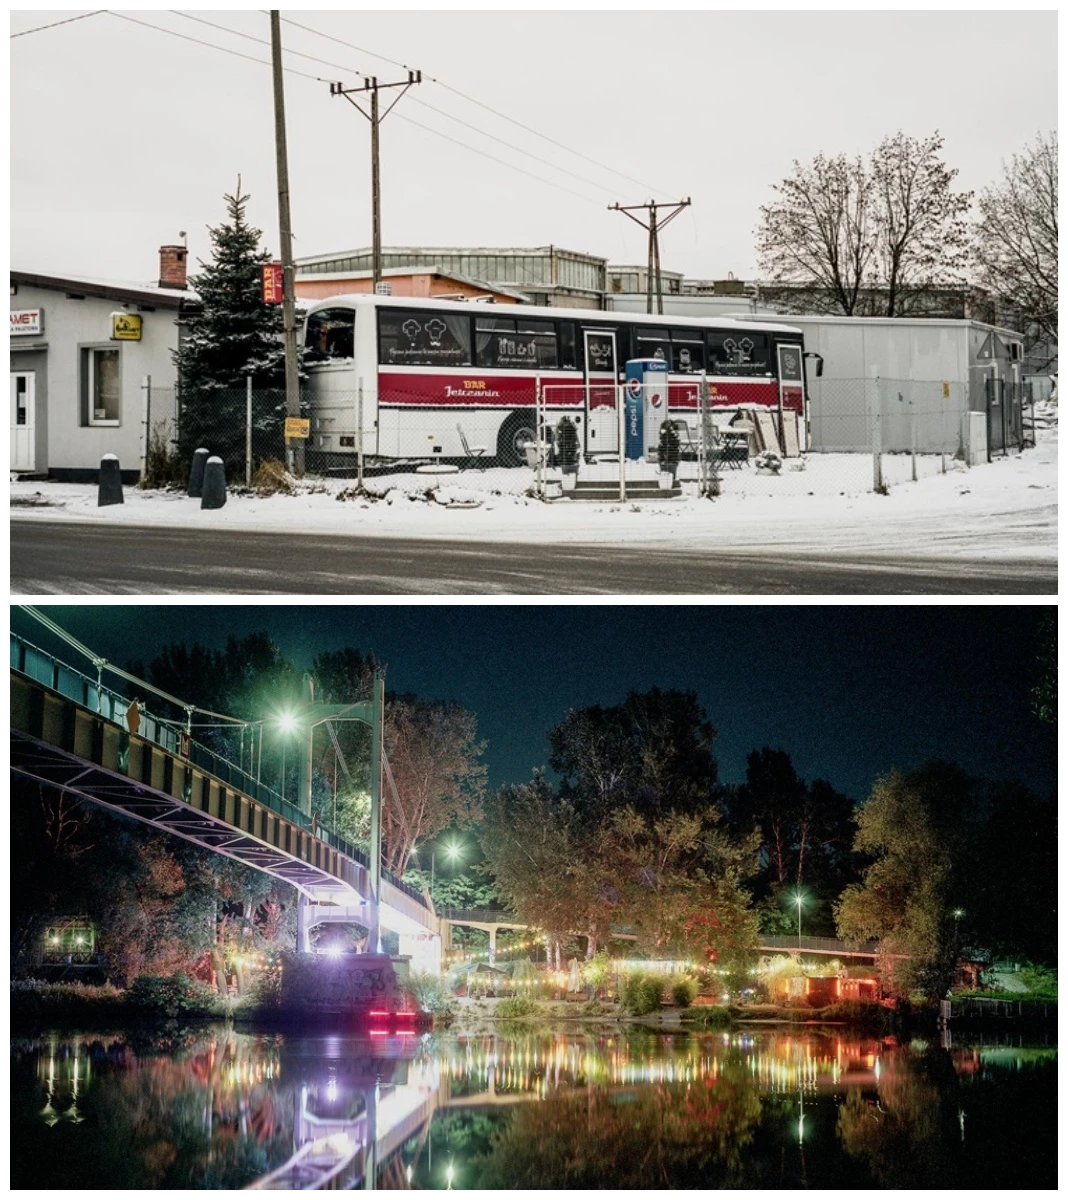 Kolaż zdjęć. Na górze: Stary przystanek autobusowy, widać stojący w pobliżu autokar, na dole: Podświetlony licznymi światełkami most we Wrocławiu